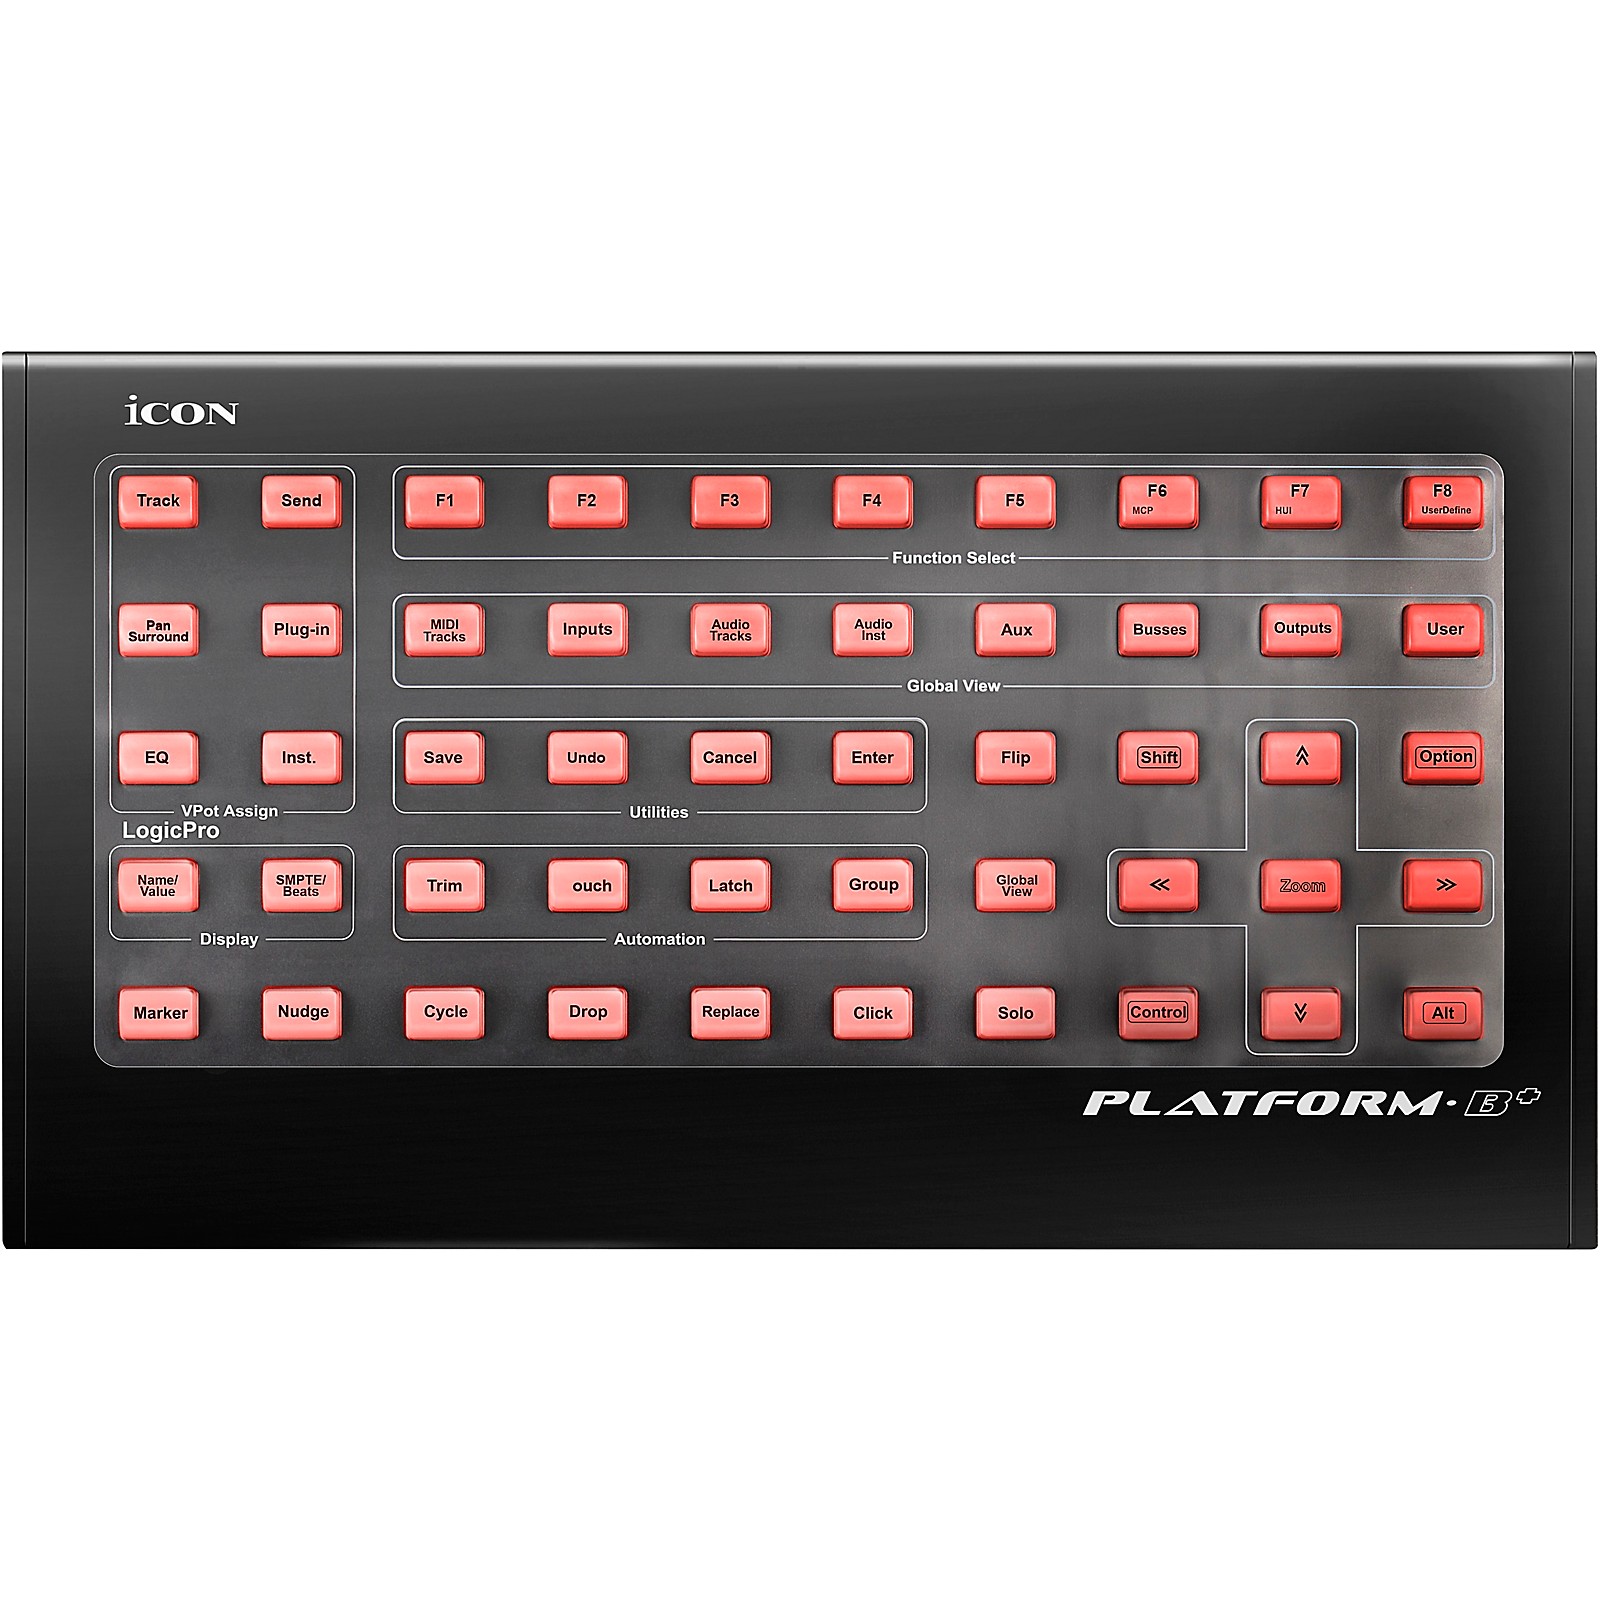 Icon-Platform-B-controller-per-DAW-sku-3363291852004